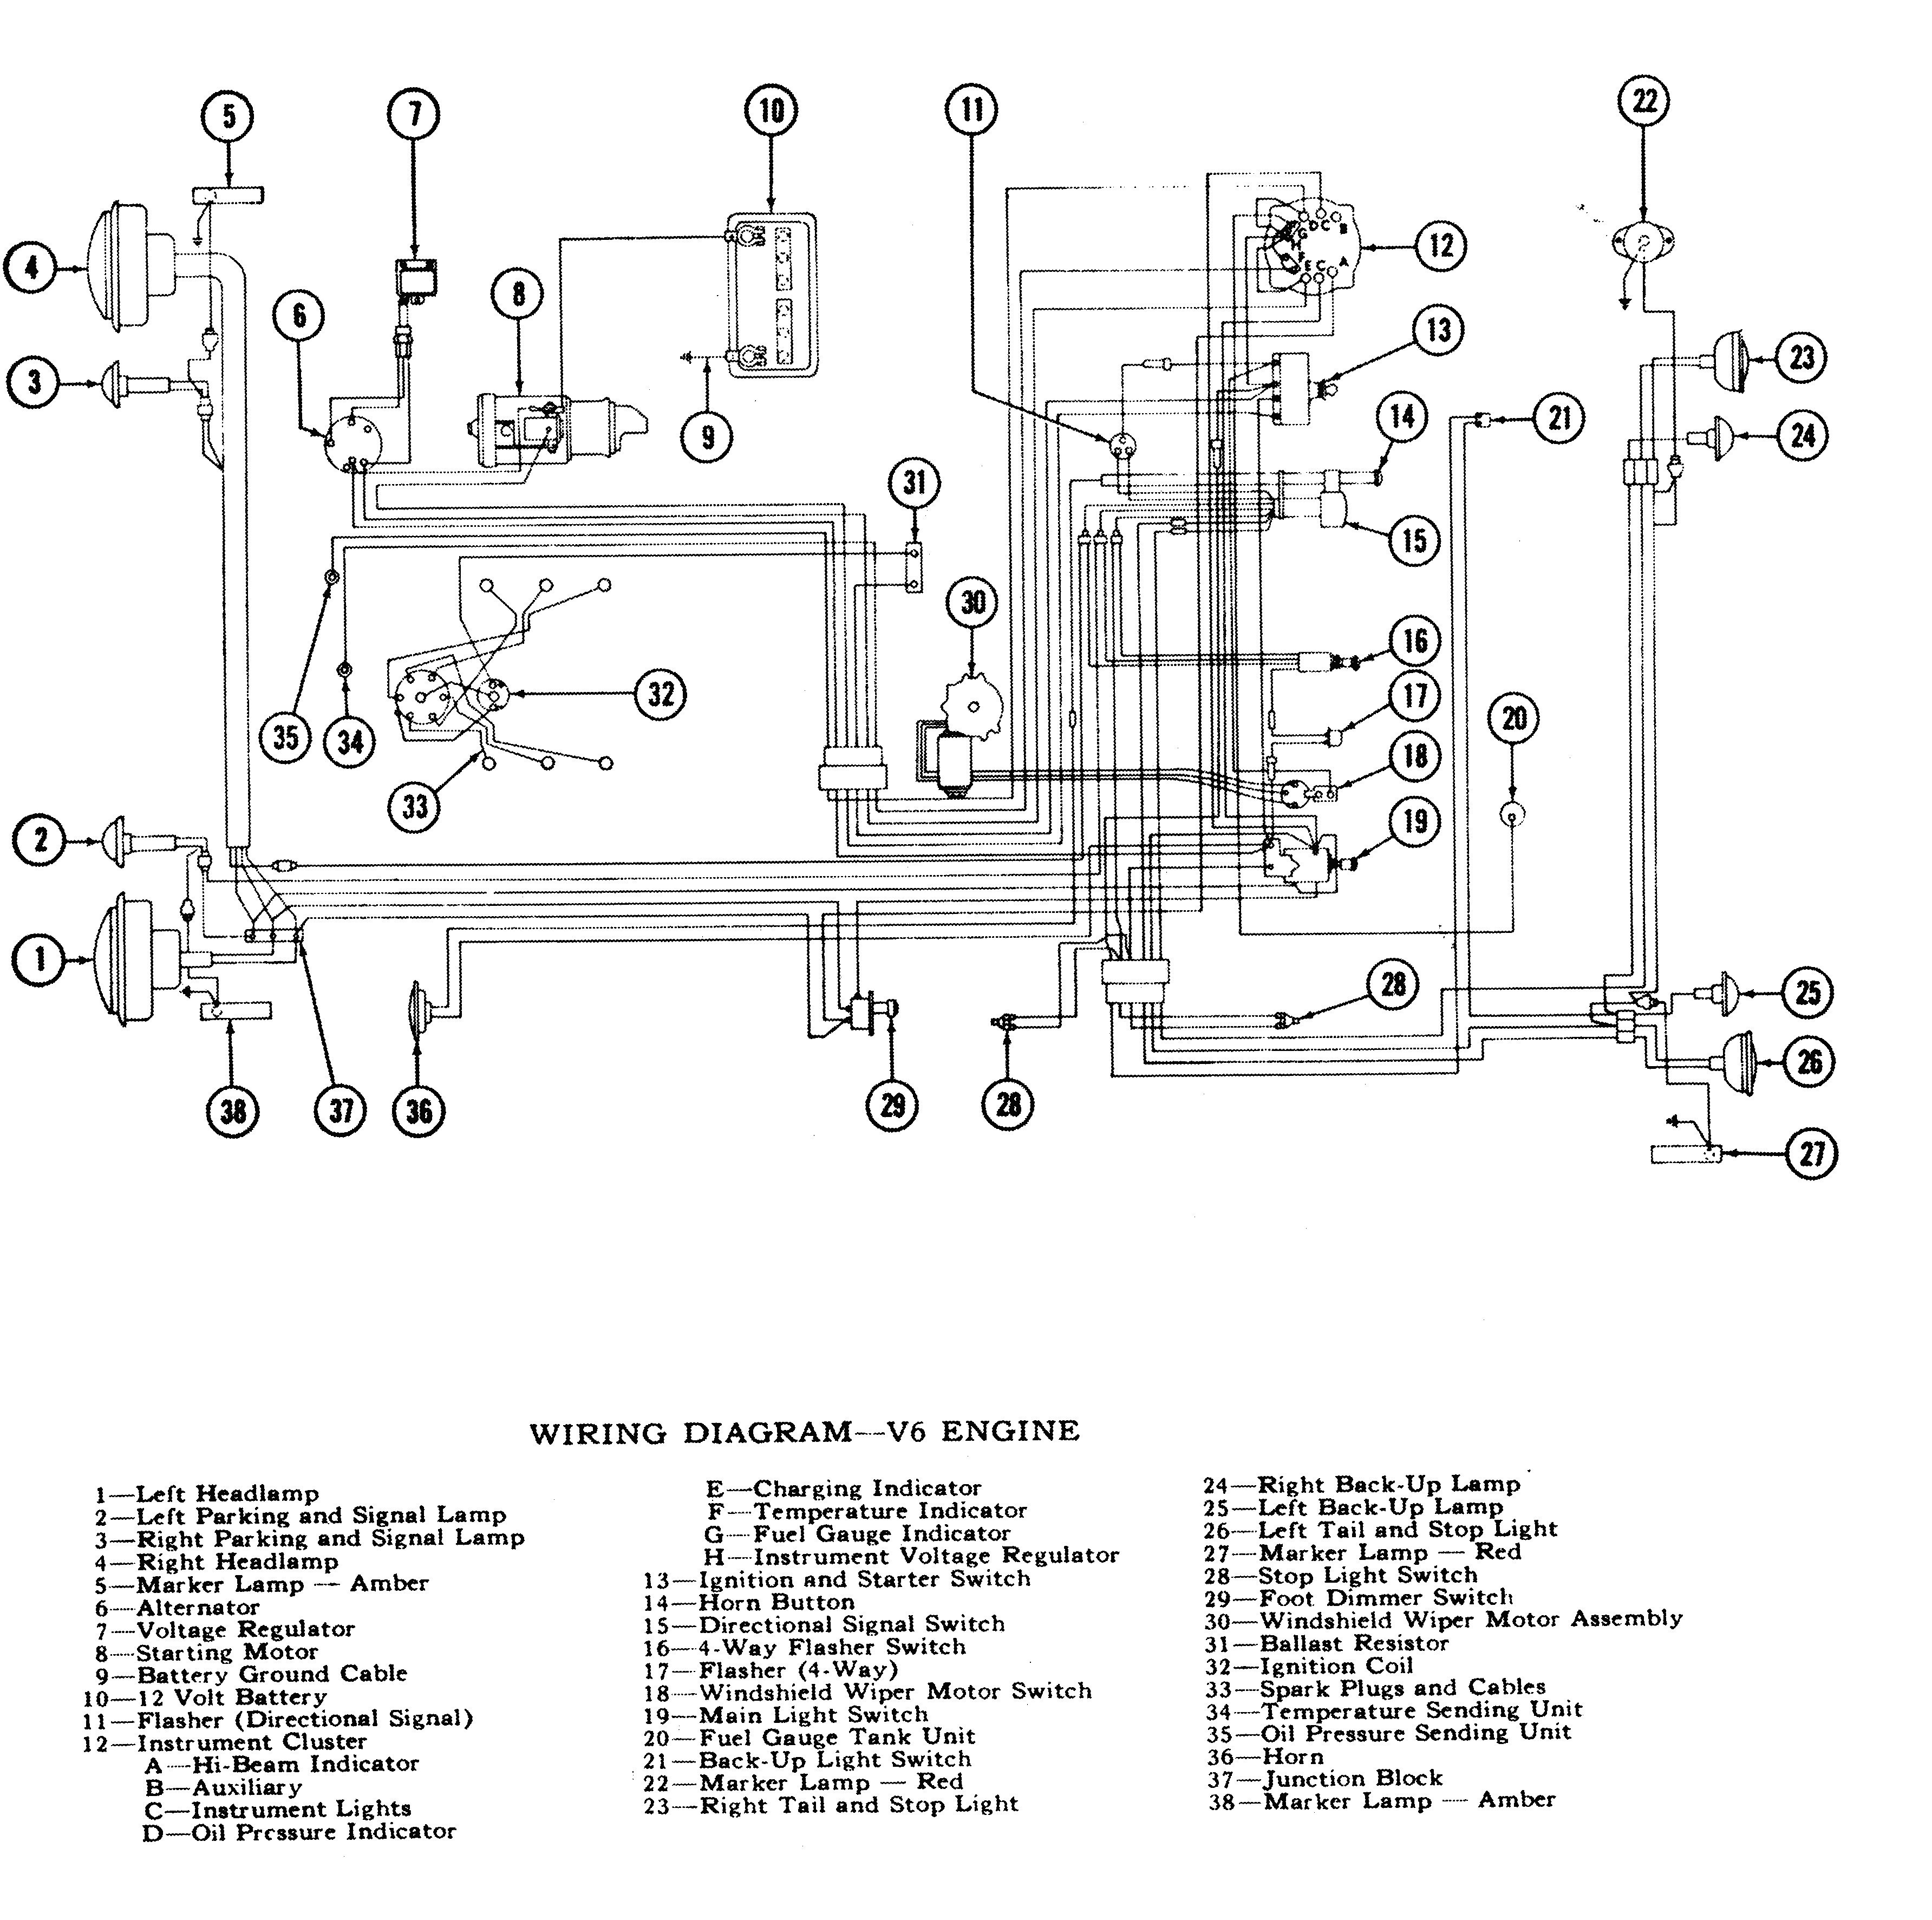 ecotec alternator wiring diagram save modern 5 wire alternator rh ipphil Dodge Alternator Wiring Diagram